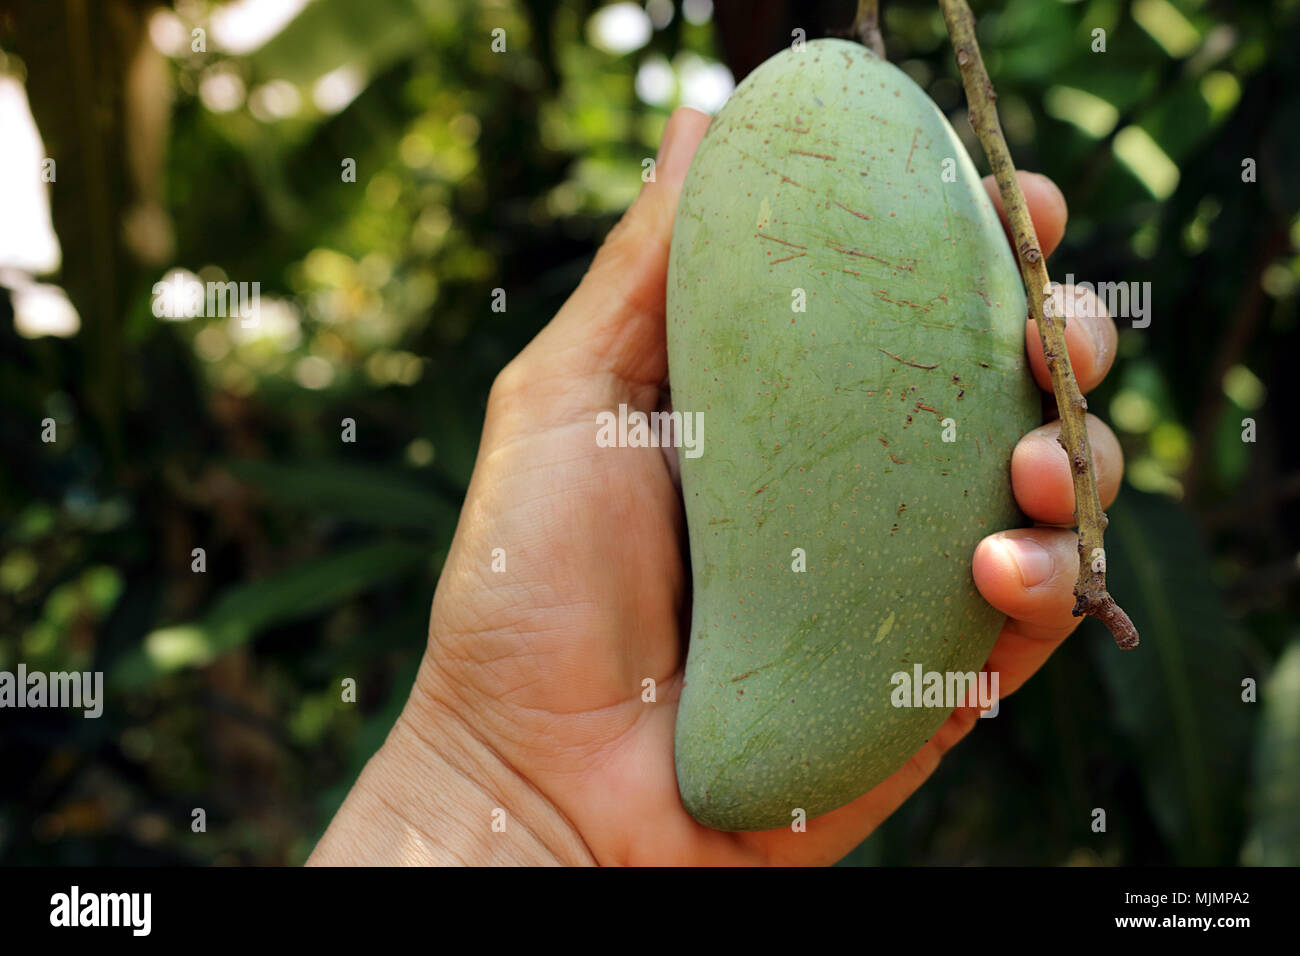 Les mangues de main khiaosawoey s'acquitter avec soin, qui sur son arbre. Banque D'Images